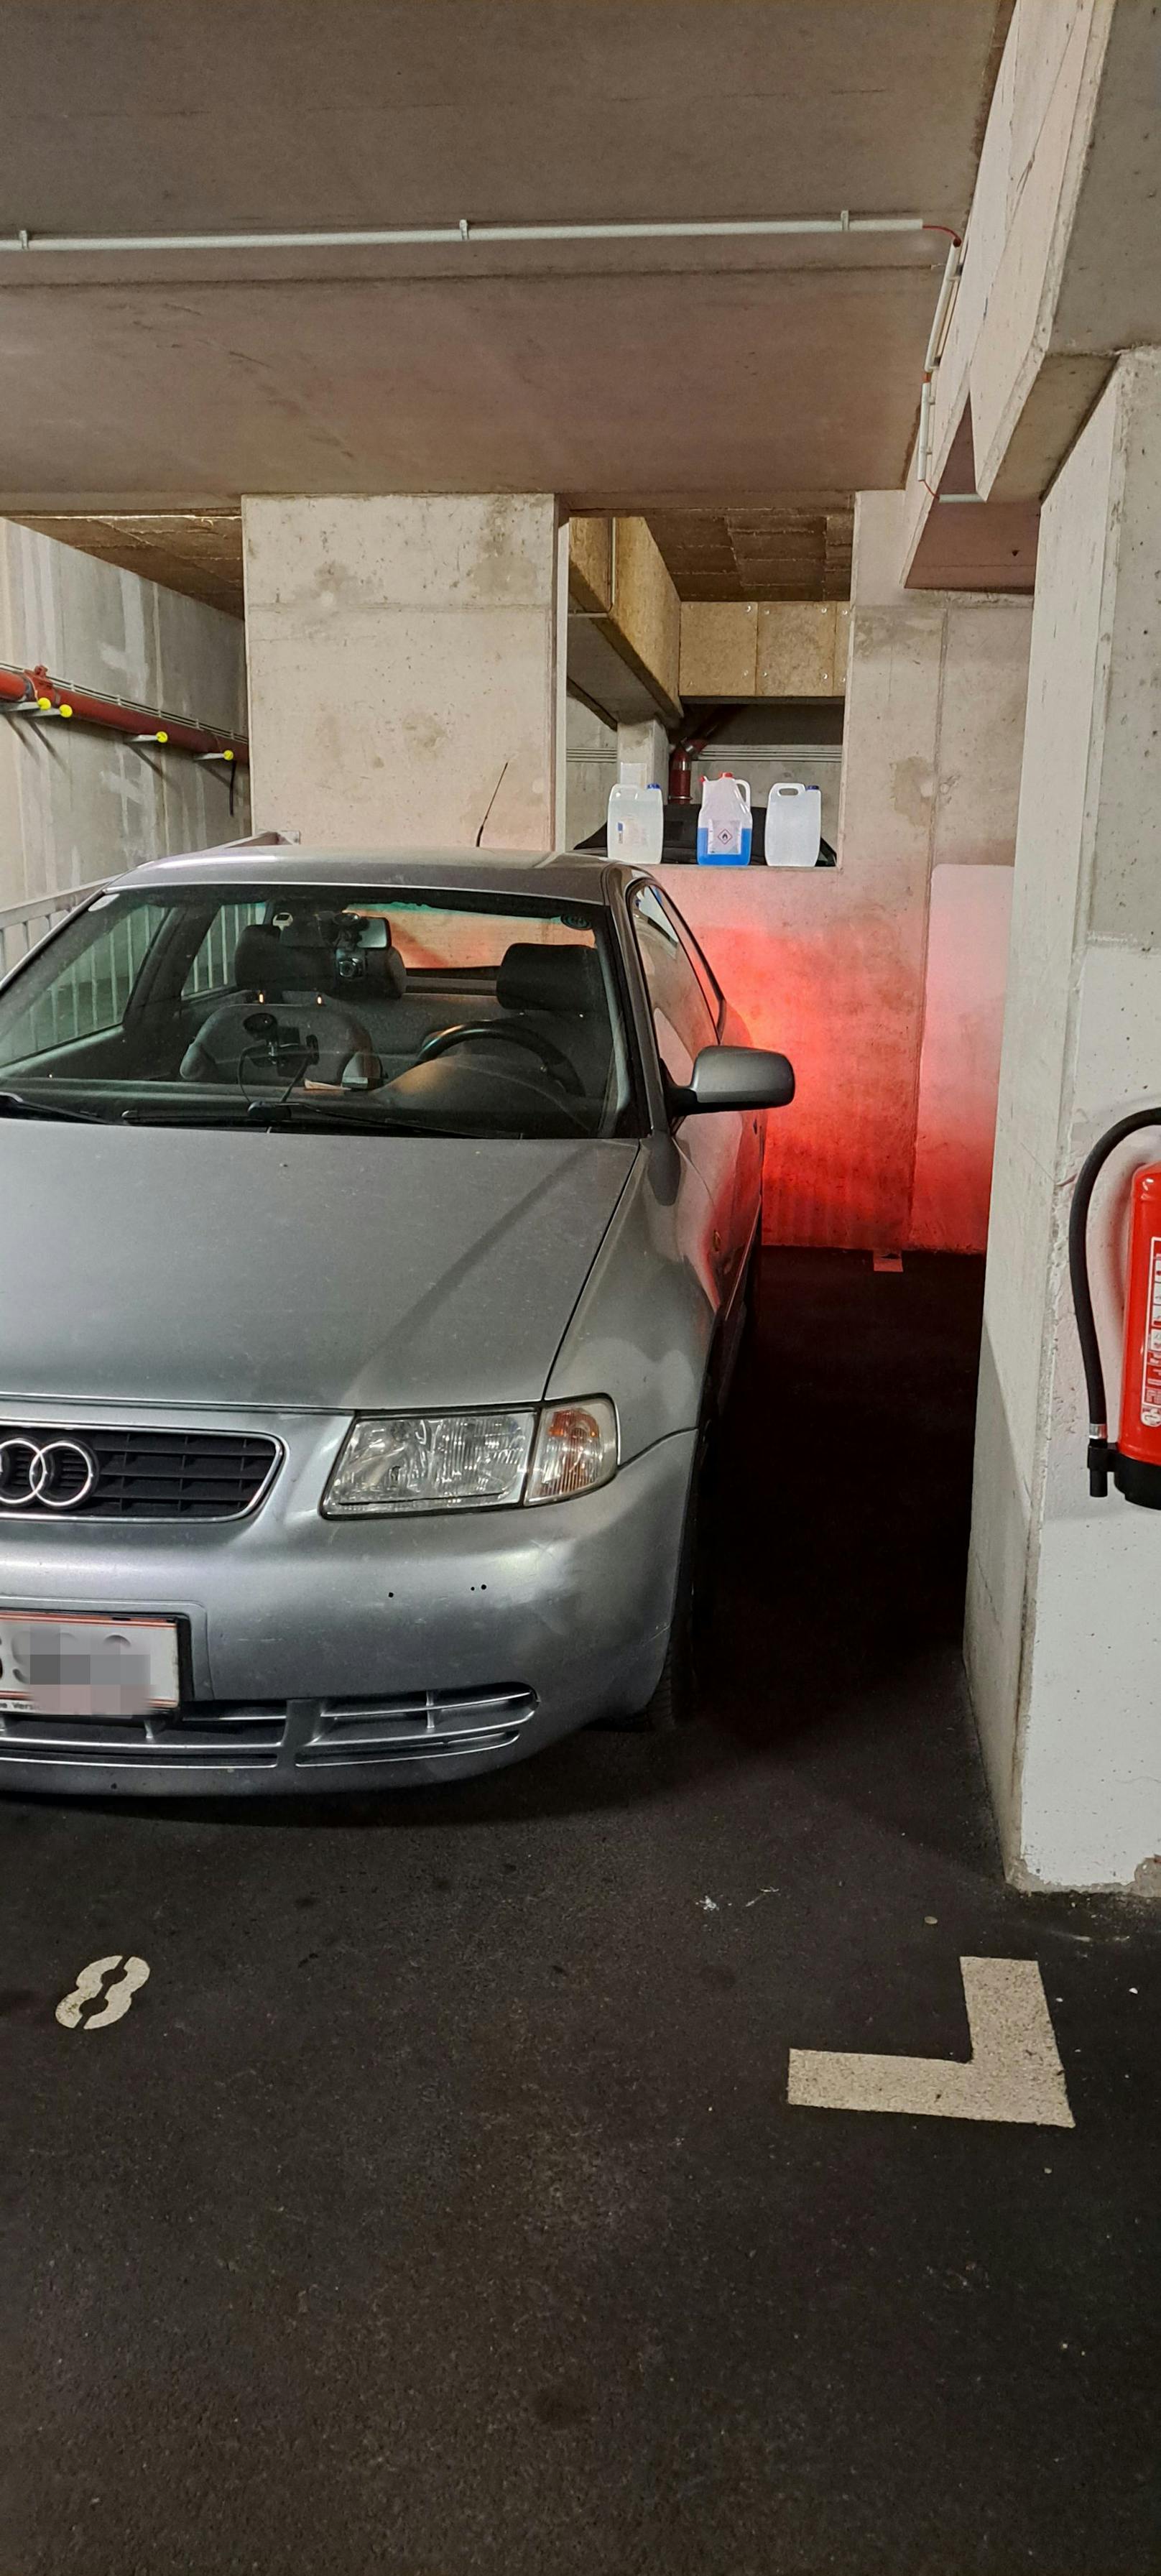 Der Audi A3 ist in einer Tiefgarage geparkt, beim Ausparken sehe man die Bremslichter an der Mauer, so das Argument des 73-Jährigen.